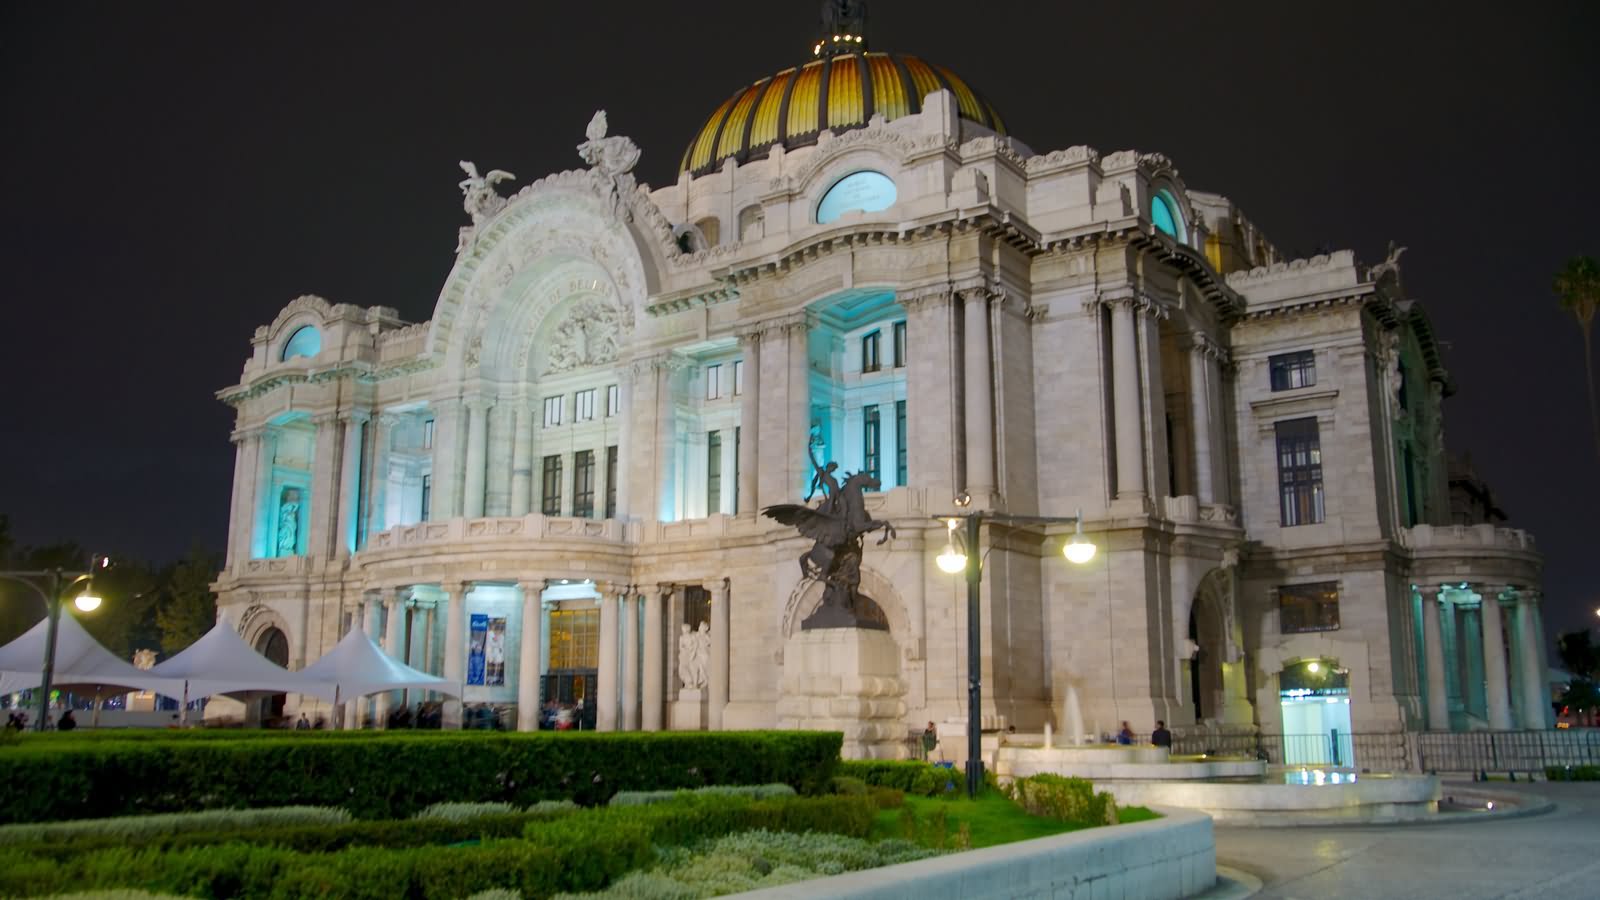 Side View Of The Palacio de Bellas Artes At Night